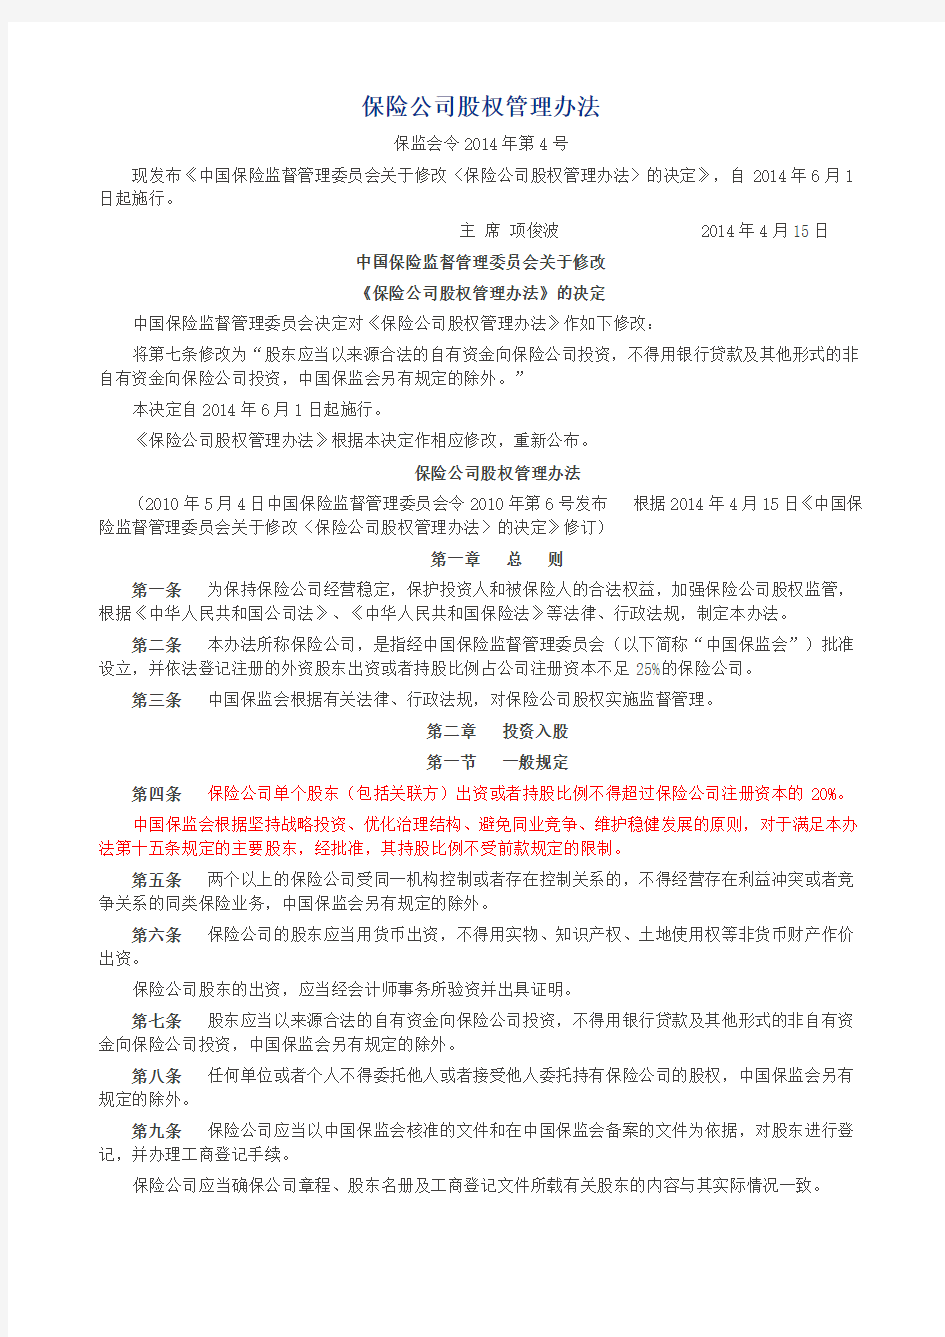 2014-4号-保险公司股权管理办法(保监会令)